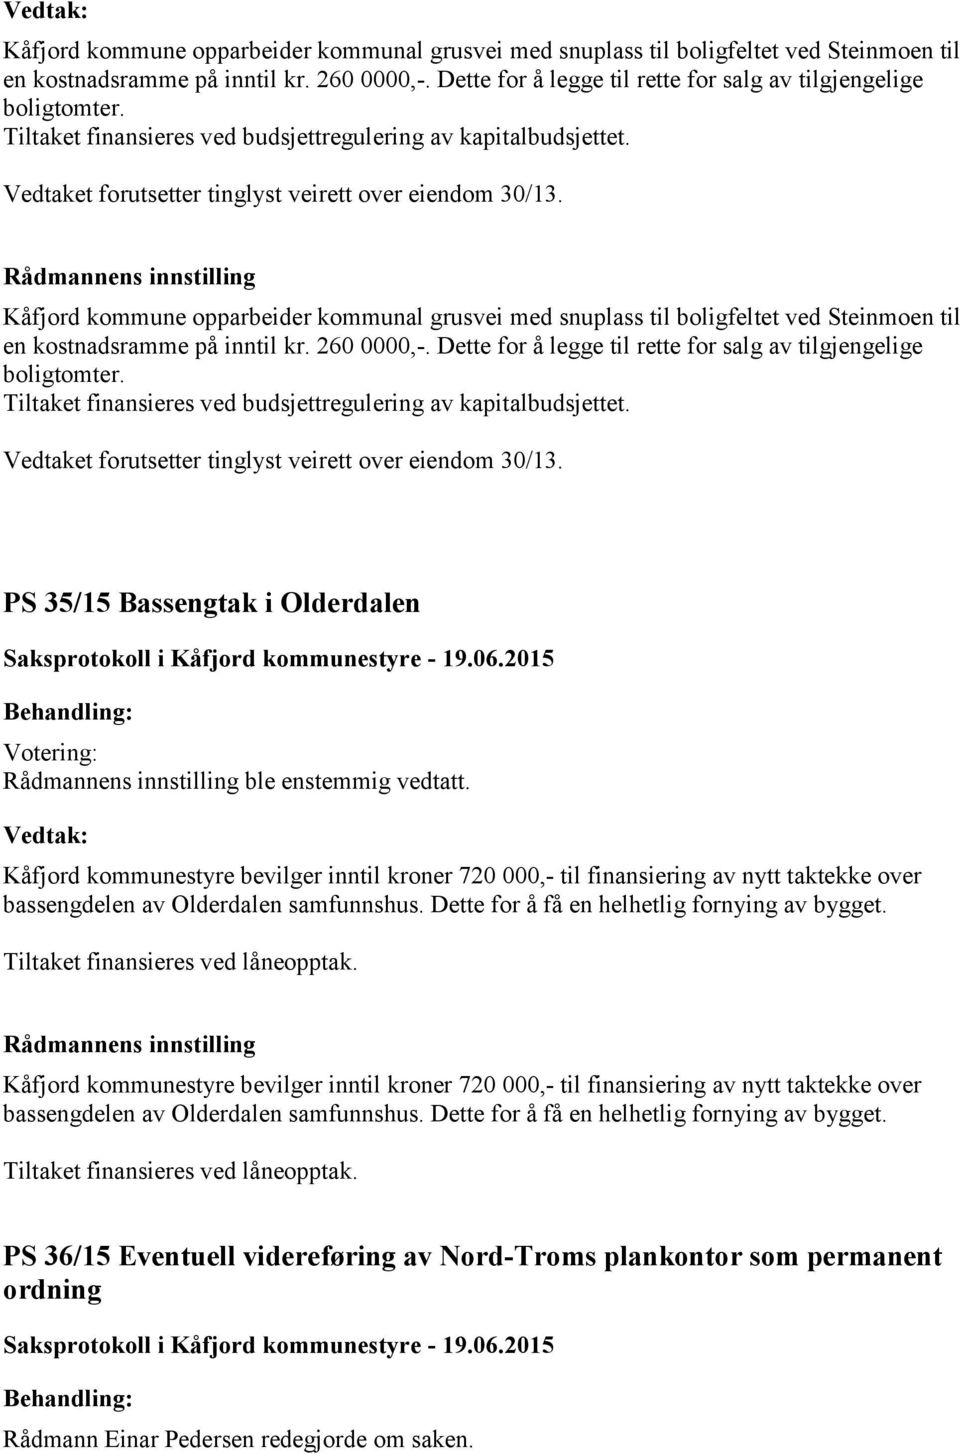 PS 35/15 Bassengtak i Olderdalen ble enstemmig vedtatt. Kåfjord kommunestyre bevilger inntil kroner 720 000,- til finansiering av nytt taktekke over bassengdelen av Olderdalen samfunnshus.